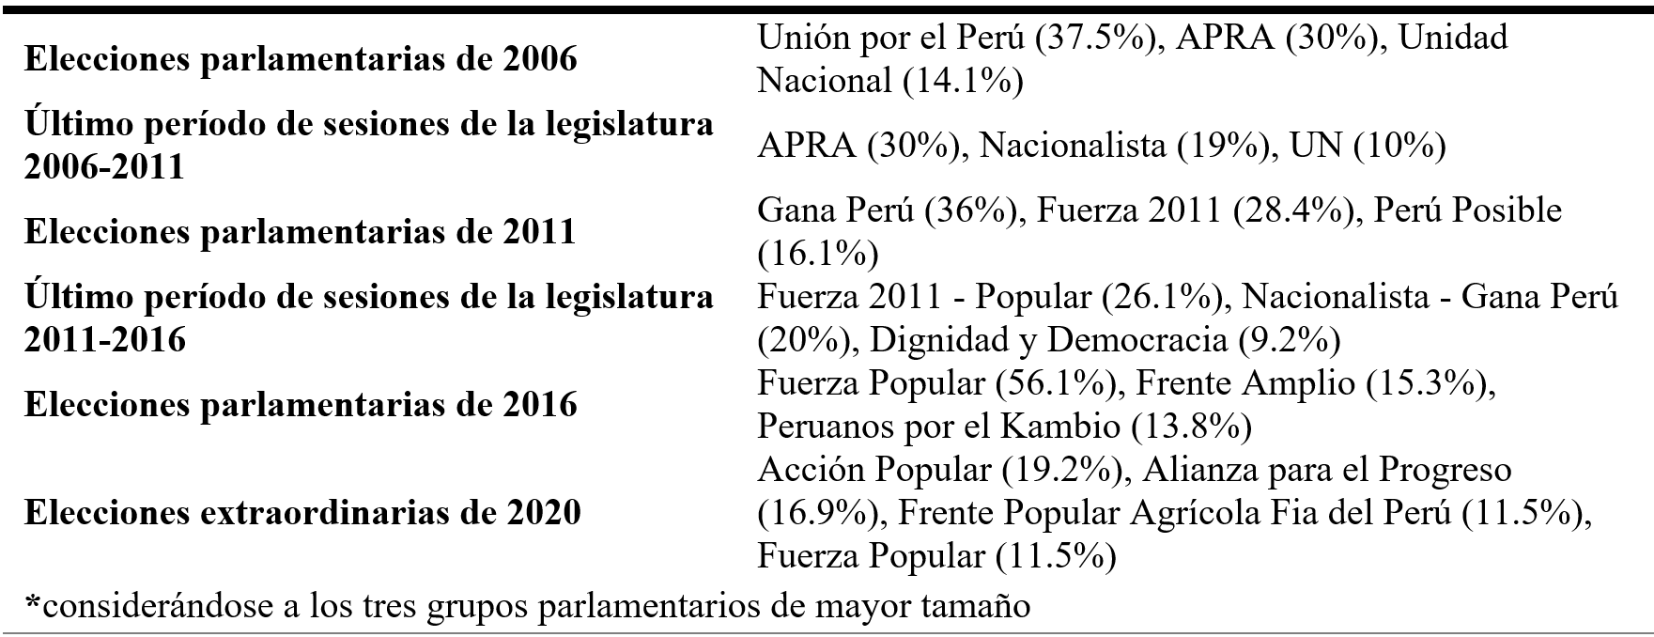 Evolución de las tres principales bancadas por elección y último período de sesiones, 2006-2020